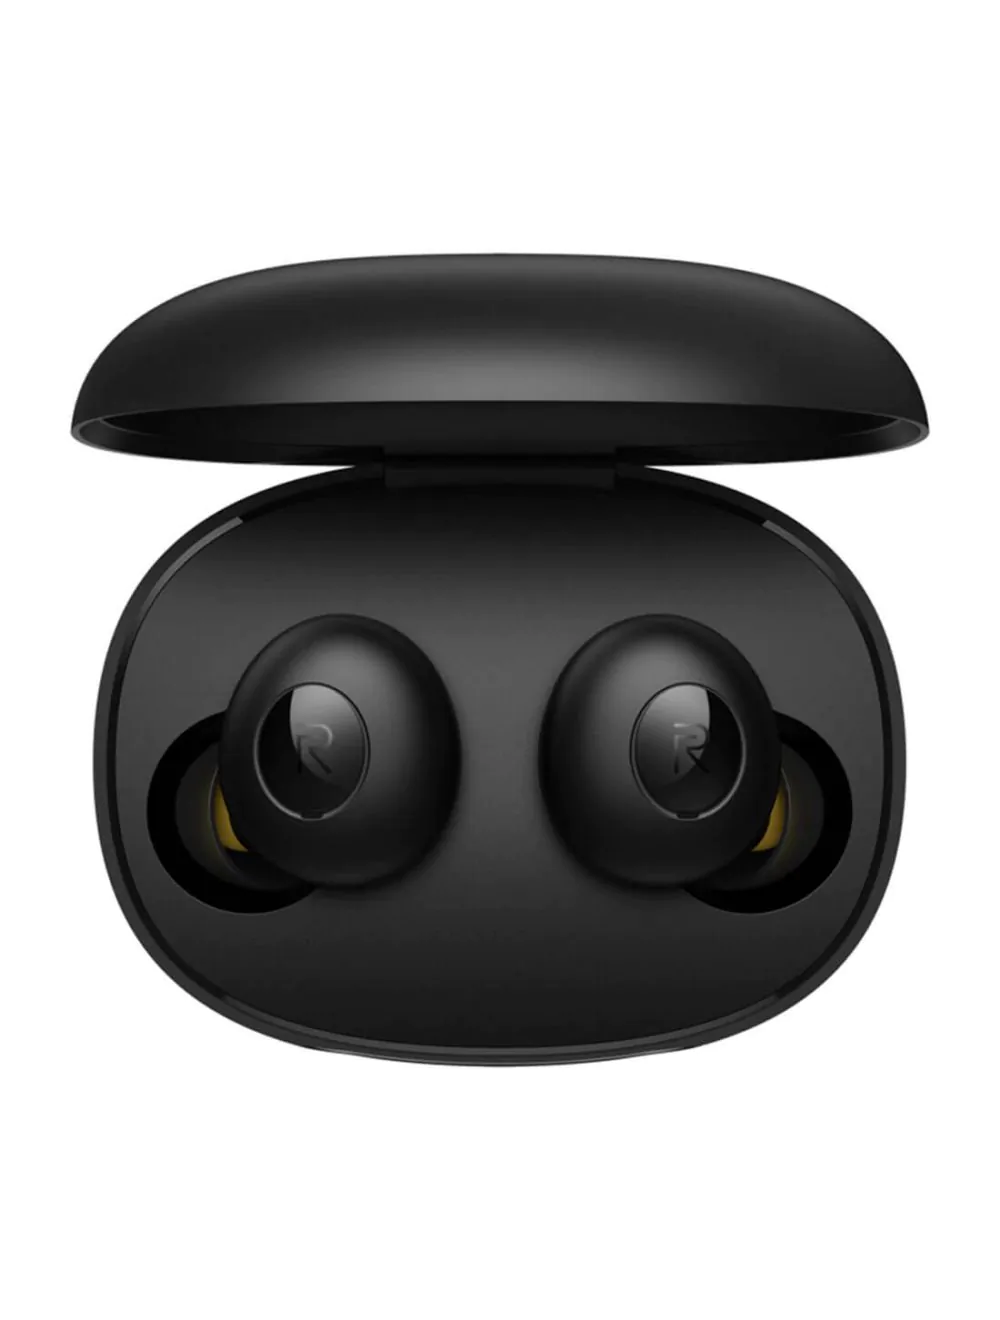 Realme Buds Q in-Ear True Wireless Earbuds (Black)